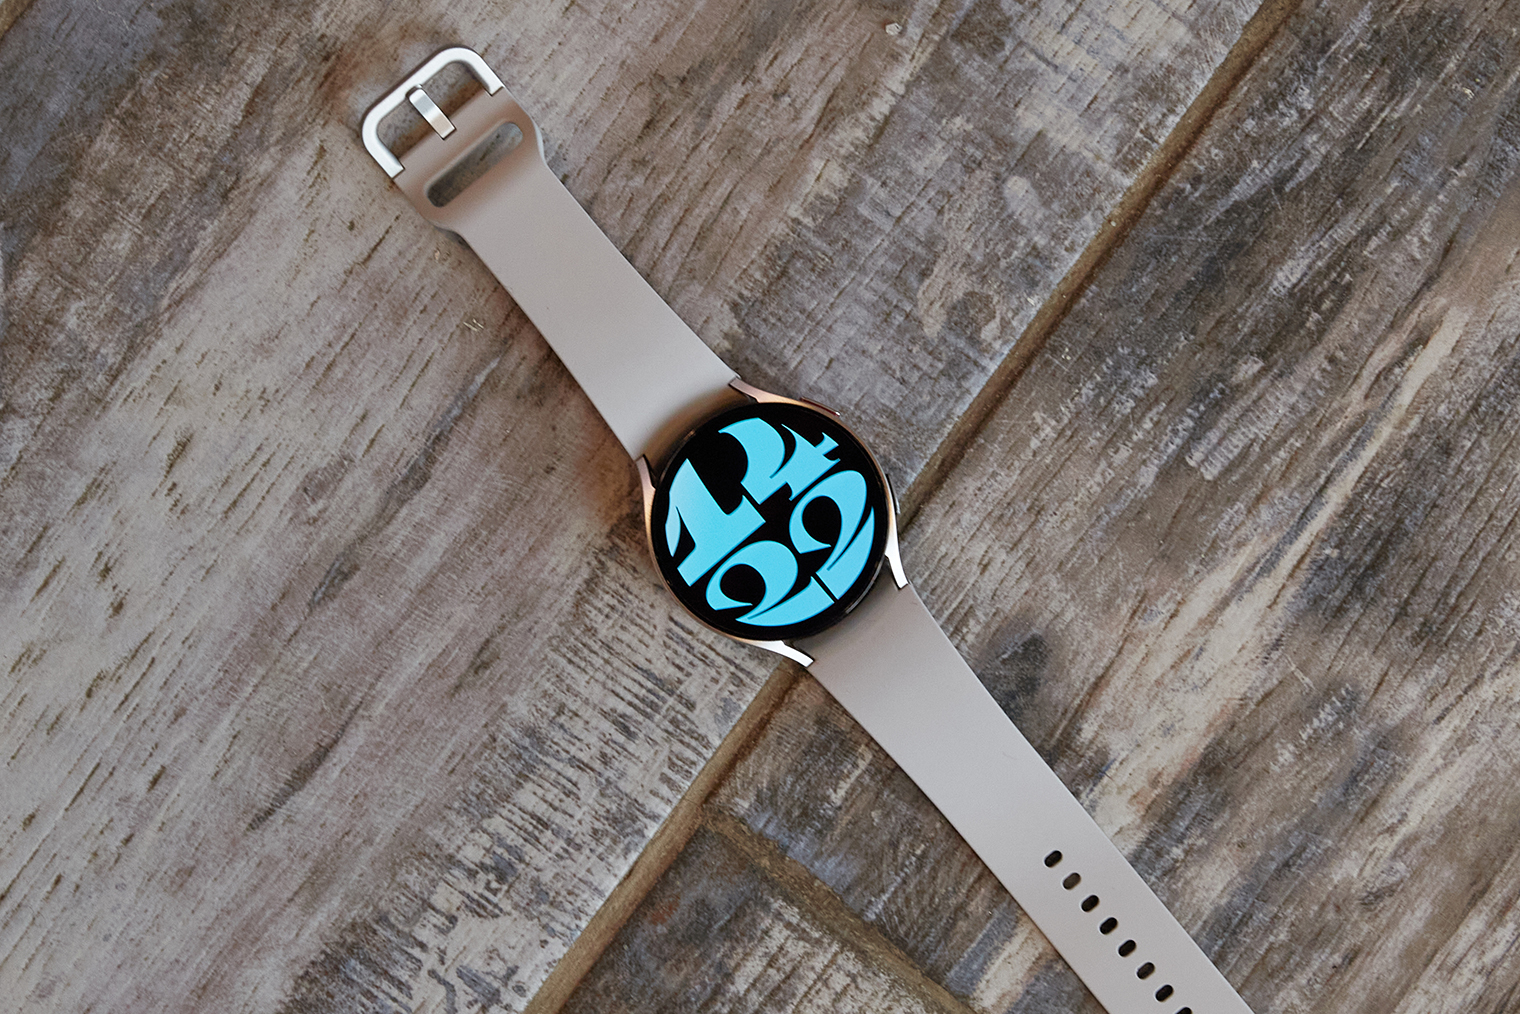 В плане дизайна часы ничем не выделяются и лишены экстравагантности. Это даже плюс: Galaxy Watch 6 хорошо смотрятся на любой руке